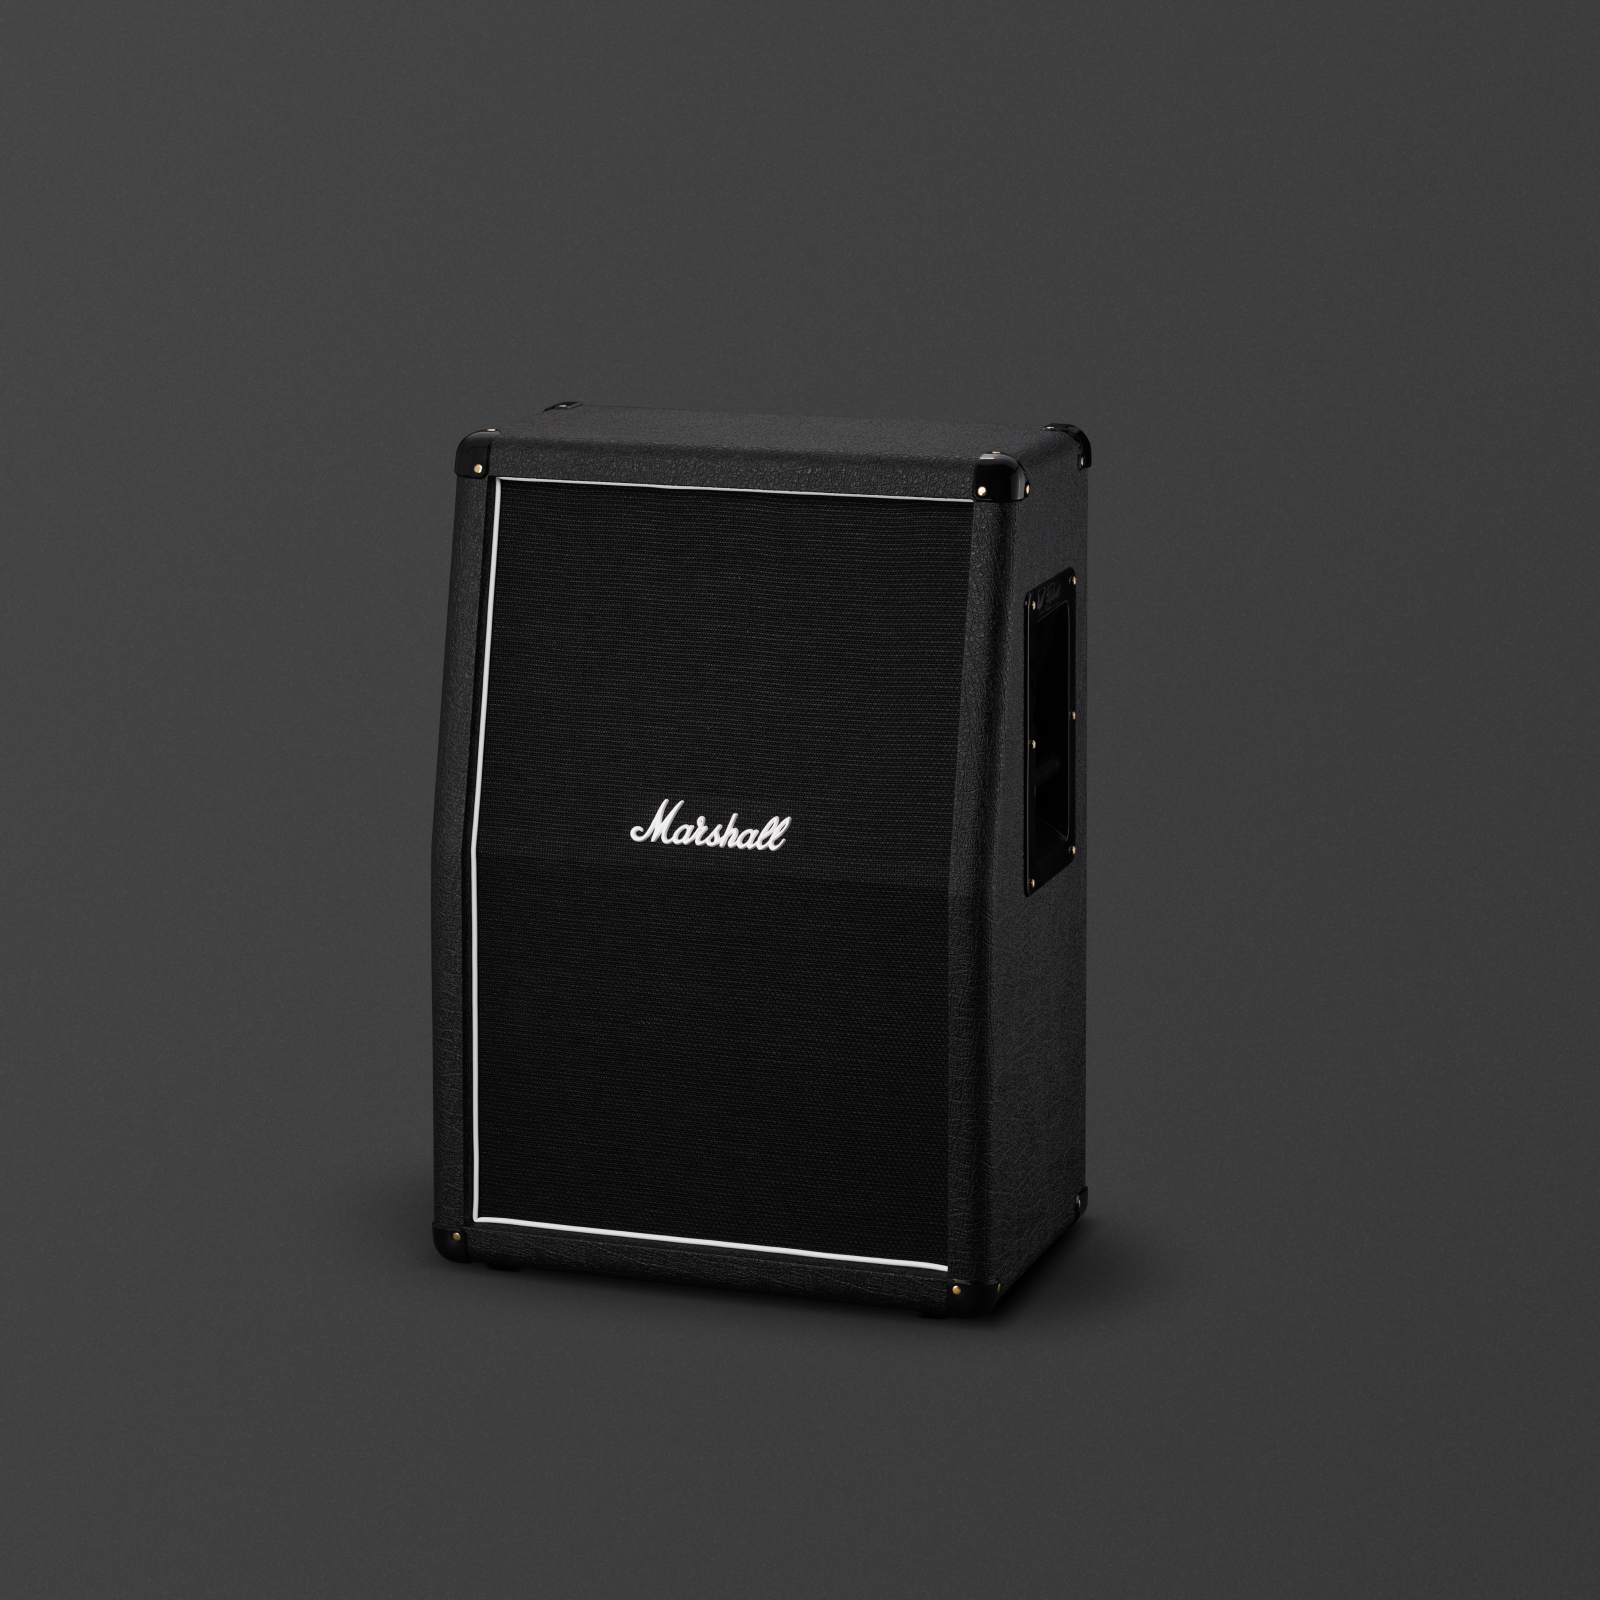 Boîtier compact 2x12" noir pour la gamme Studio Classic.